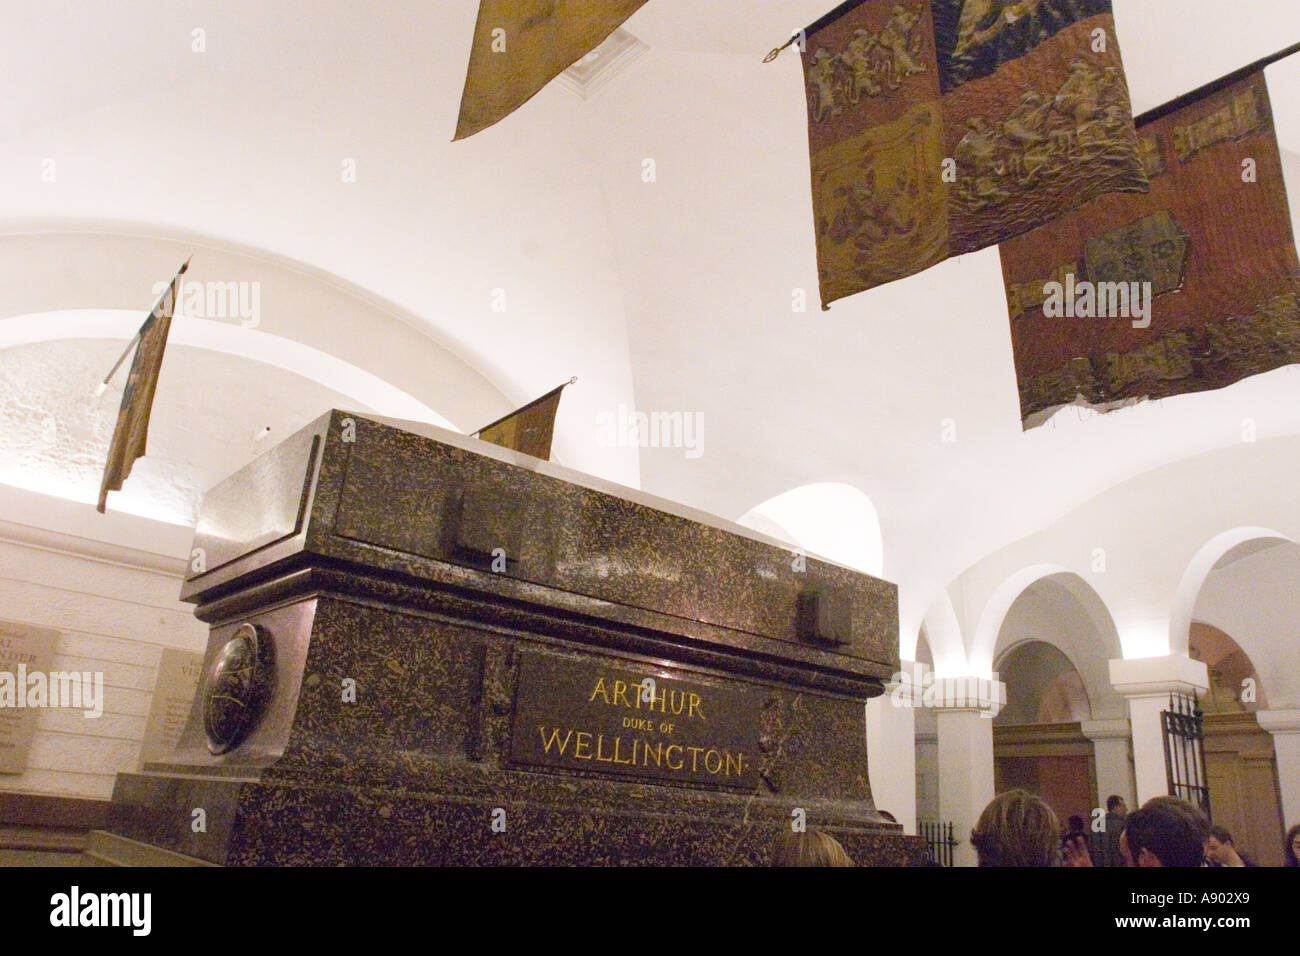 Das Grab Von Arthur Herzog Von Wellington In Der Krypta Von St Pauls Cathedral London Gb Uk